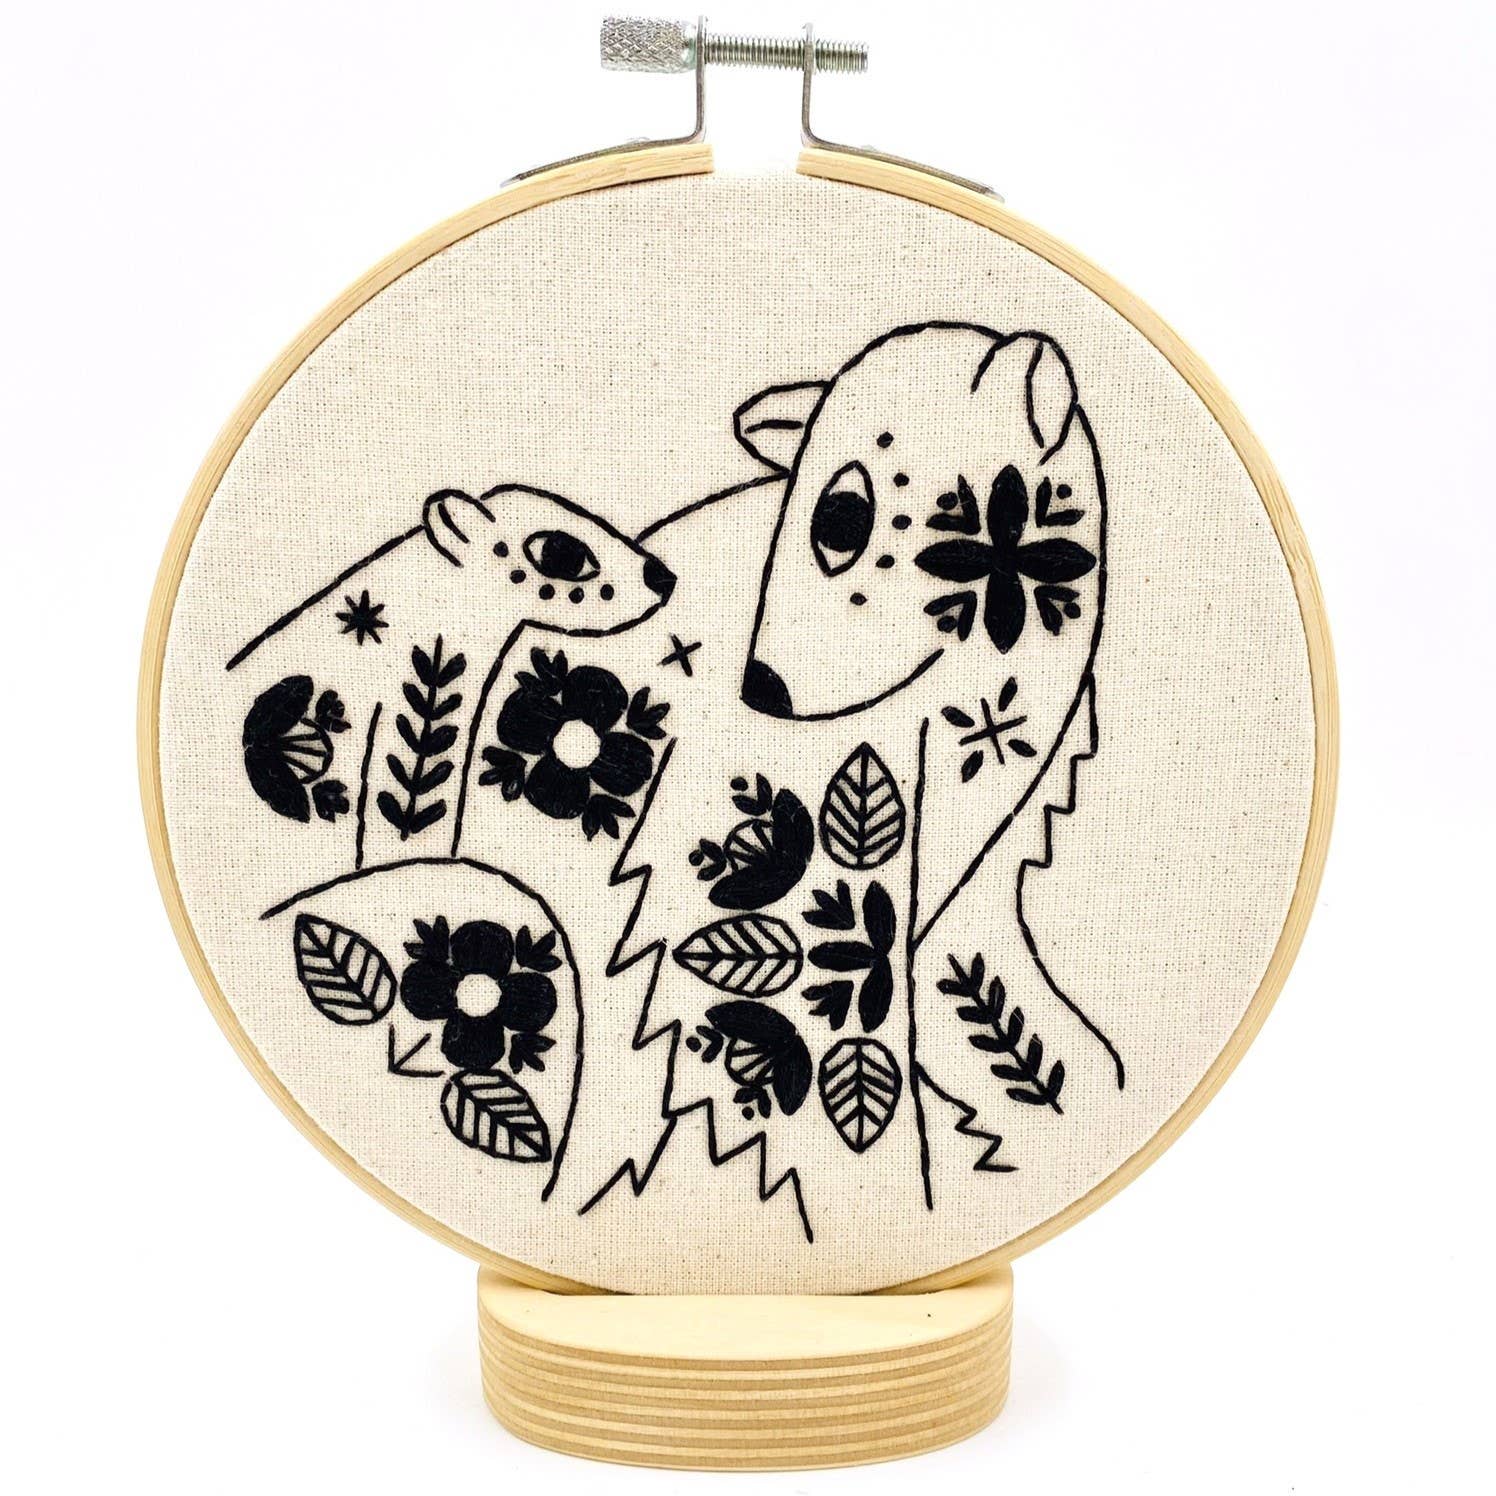 Folk bear embroidery kit by Hook, Line & Sinker